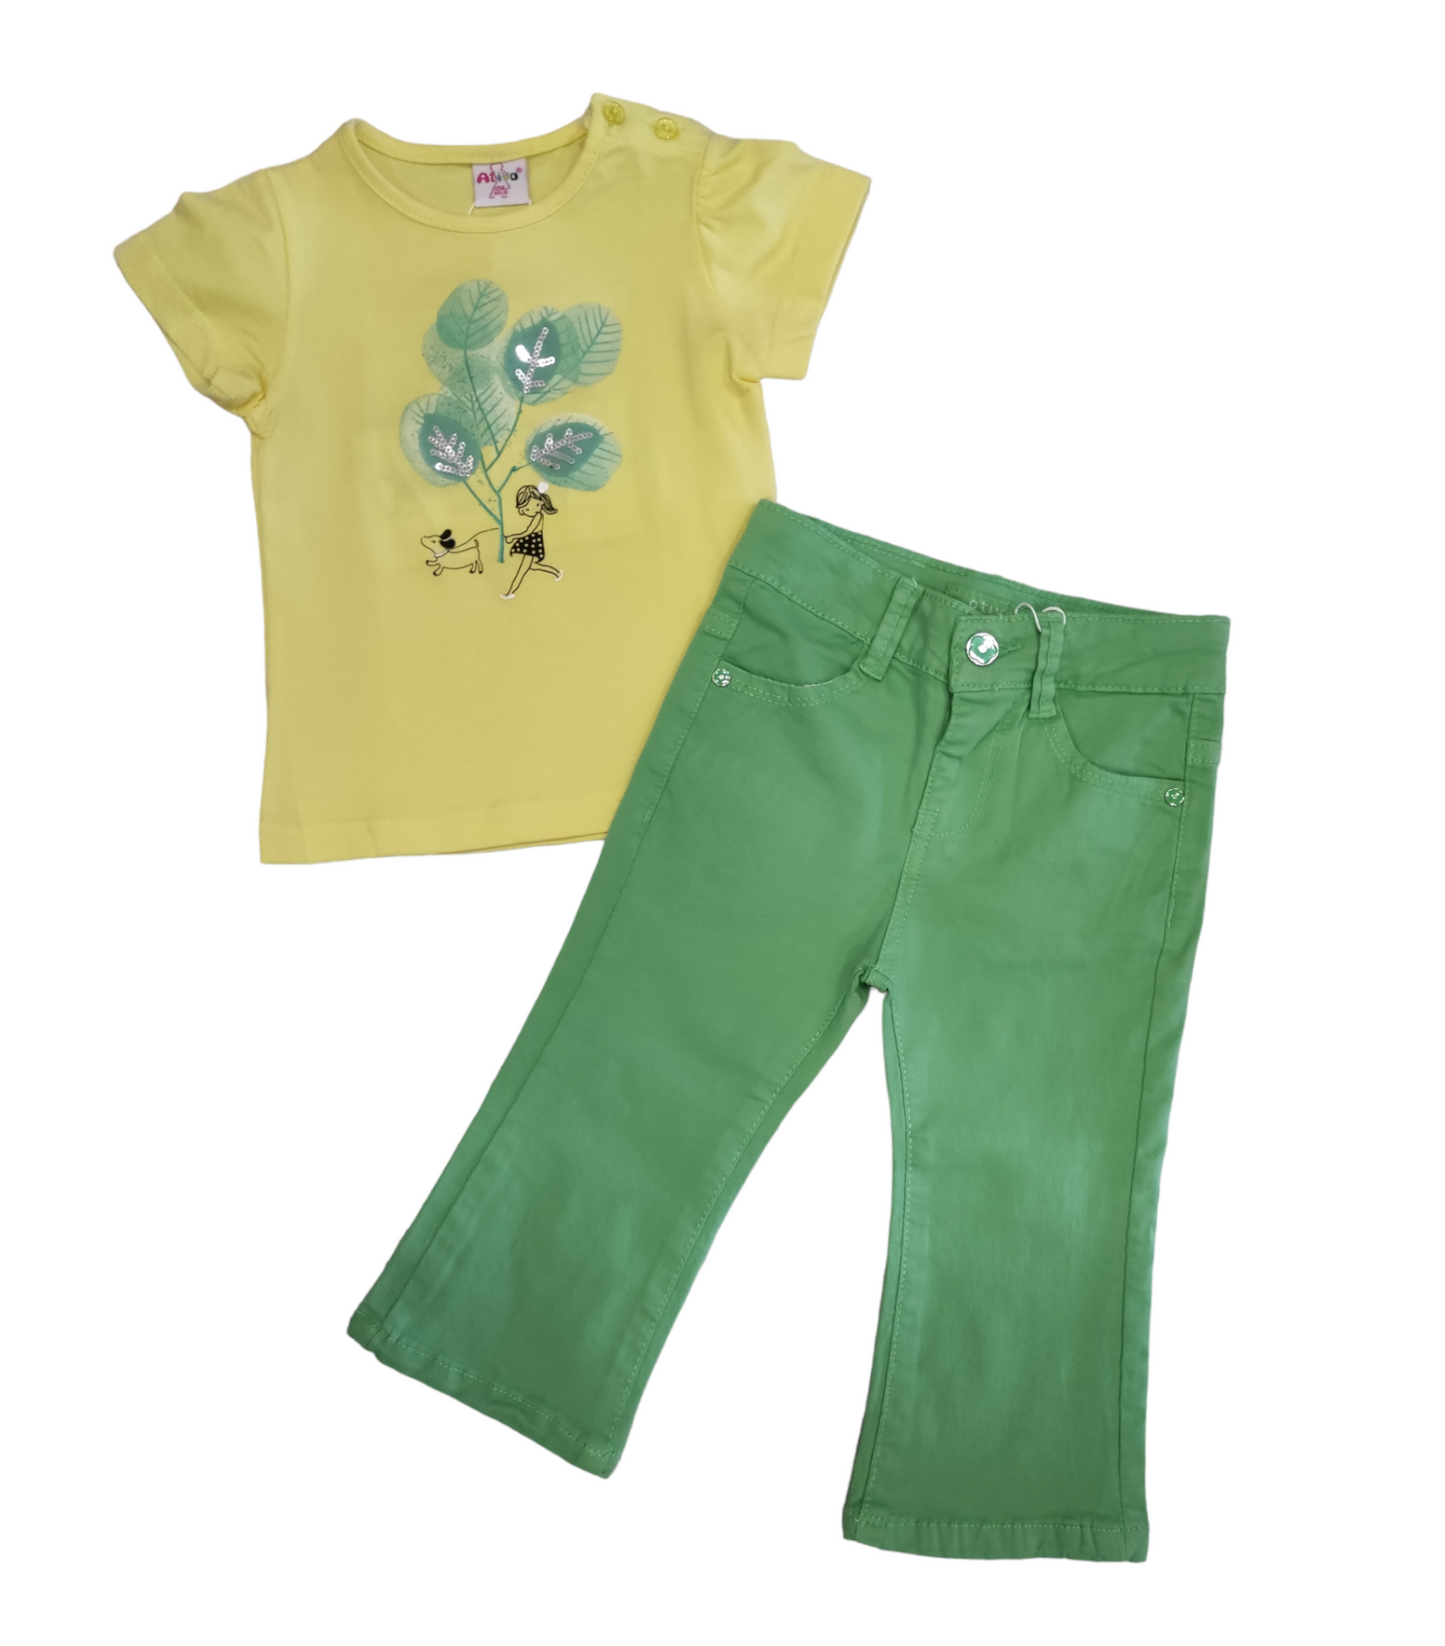 Jeans a Zampa Primaverile in Cotone Elasticizzato Colorato Verde Pastello Bambina 6-36 Mesi